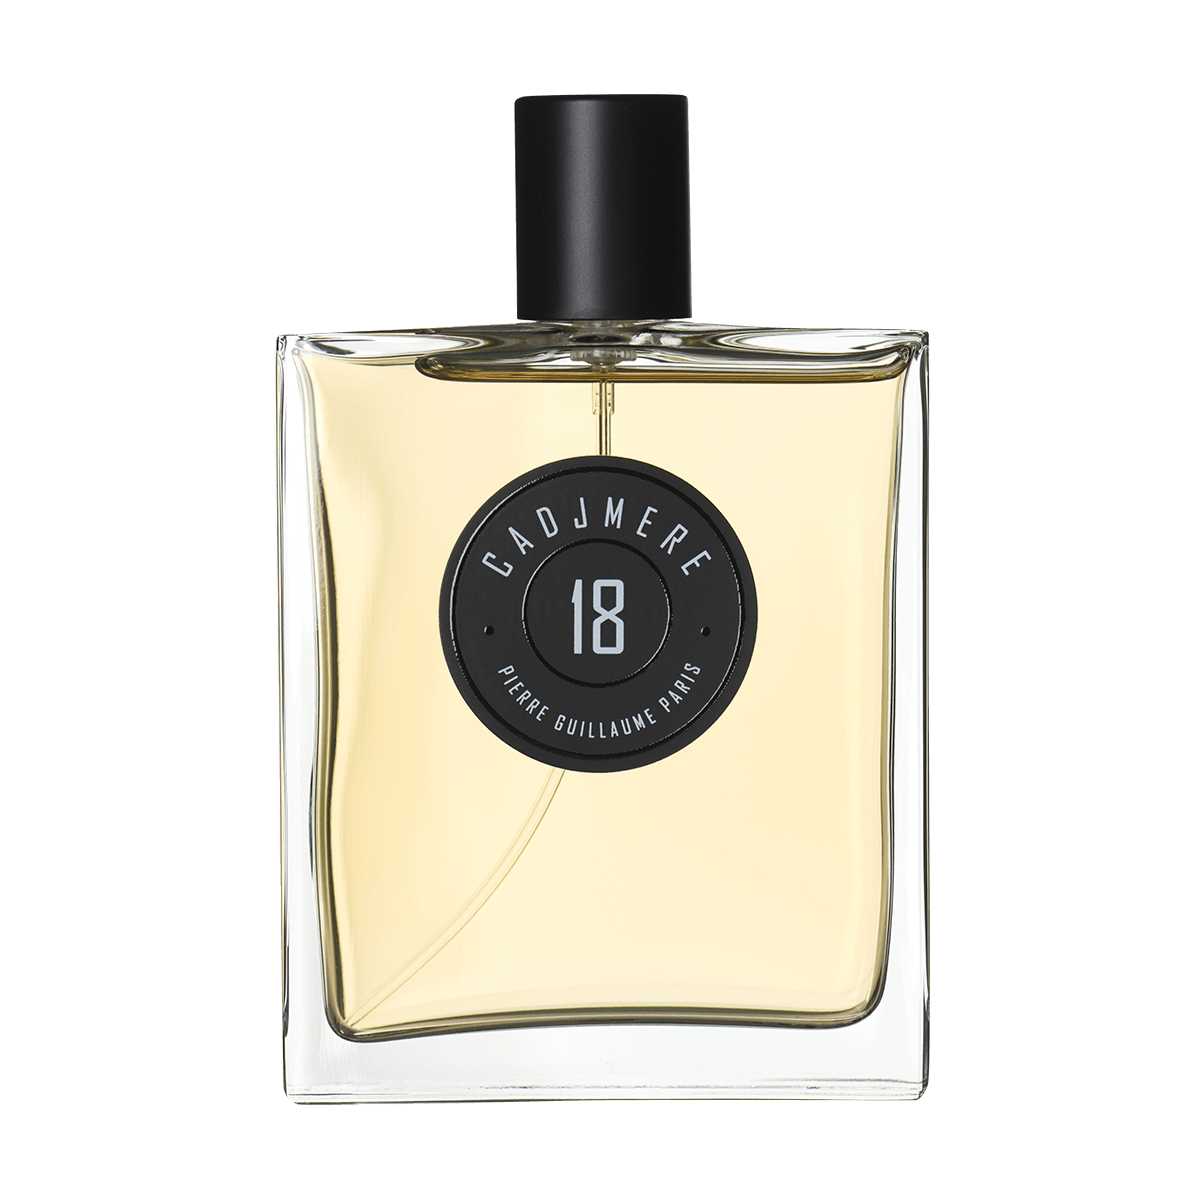 Pierre Guillaume Paris - 18 Cadjmere eau de parfum 100 ml | Perfume Lounge